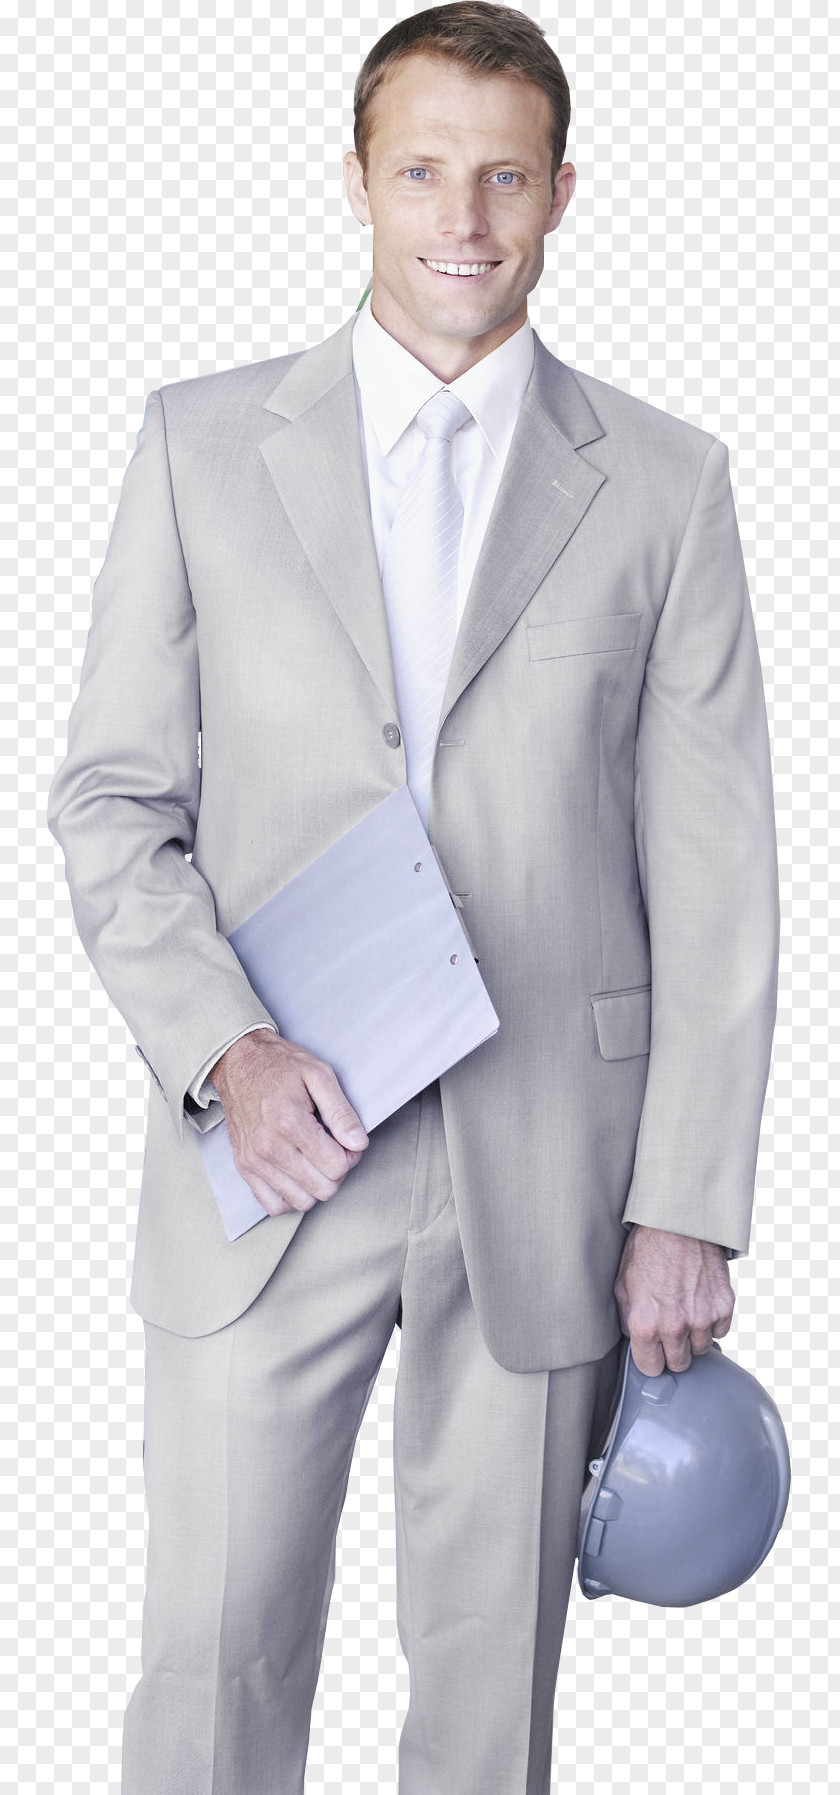 Hand Holding Helmets Folder For Business Men Formal Wear Suit Computer File PNG